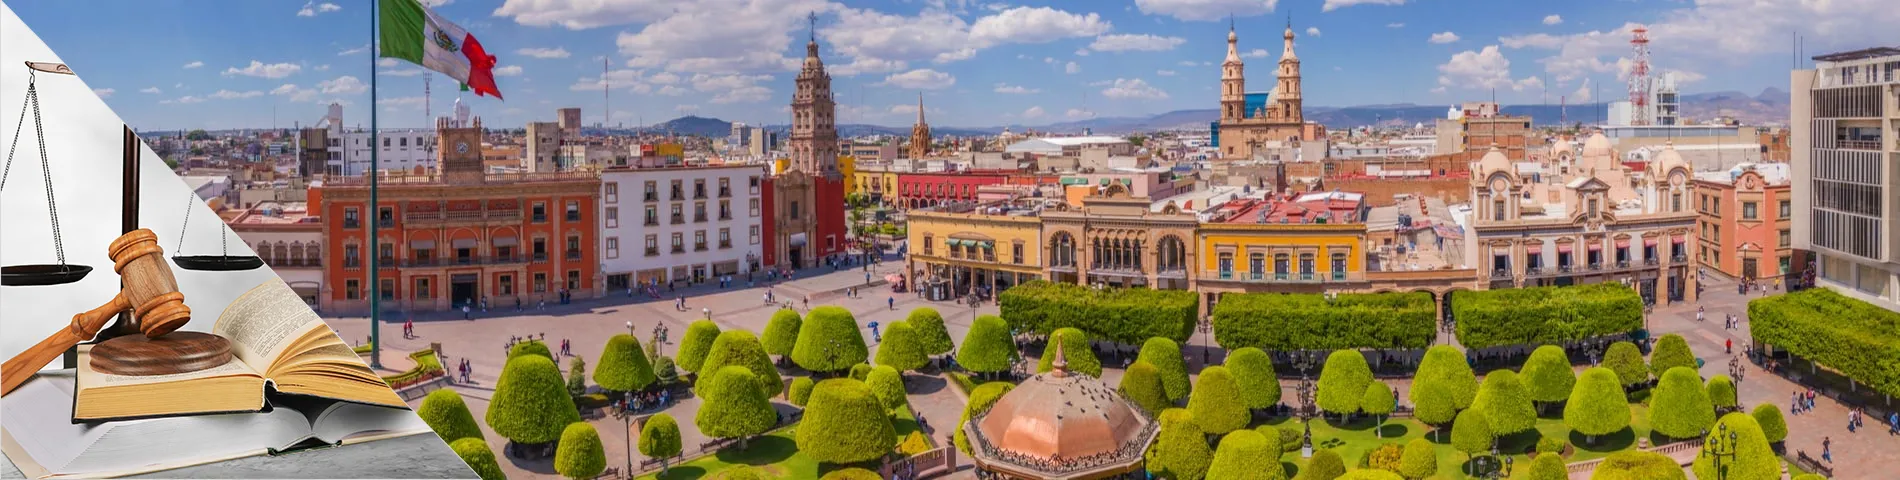 Guanajuato - Spansk for Advokater